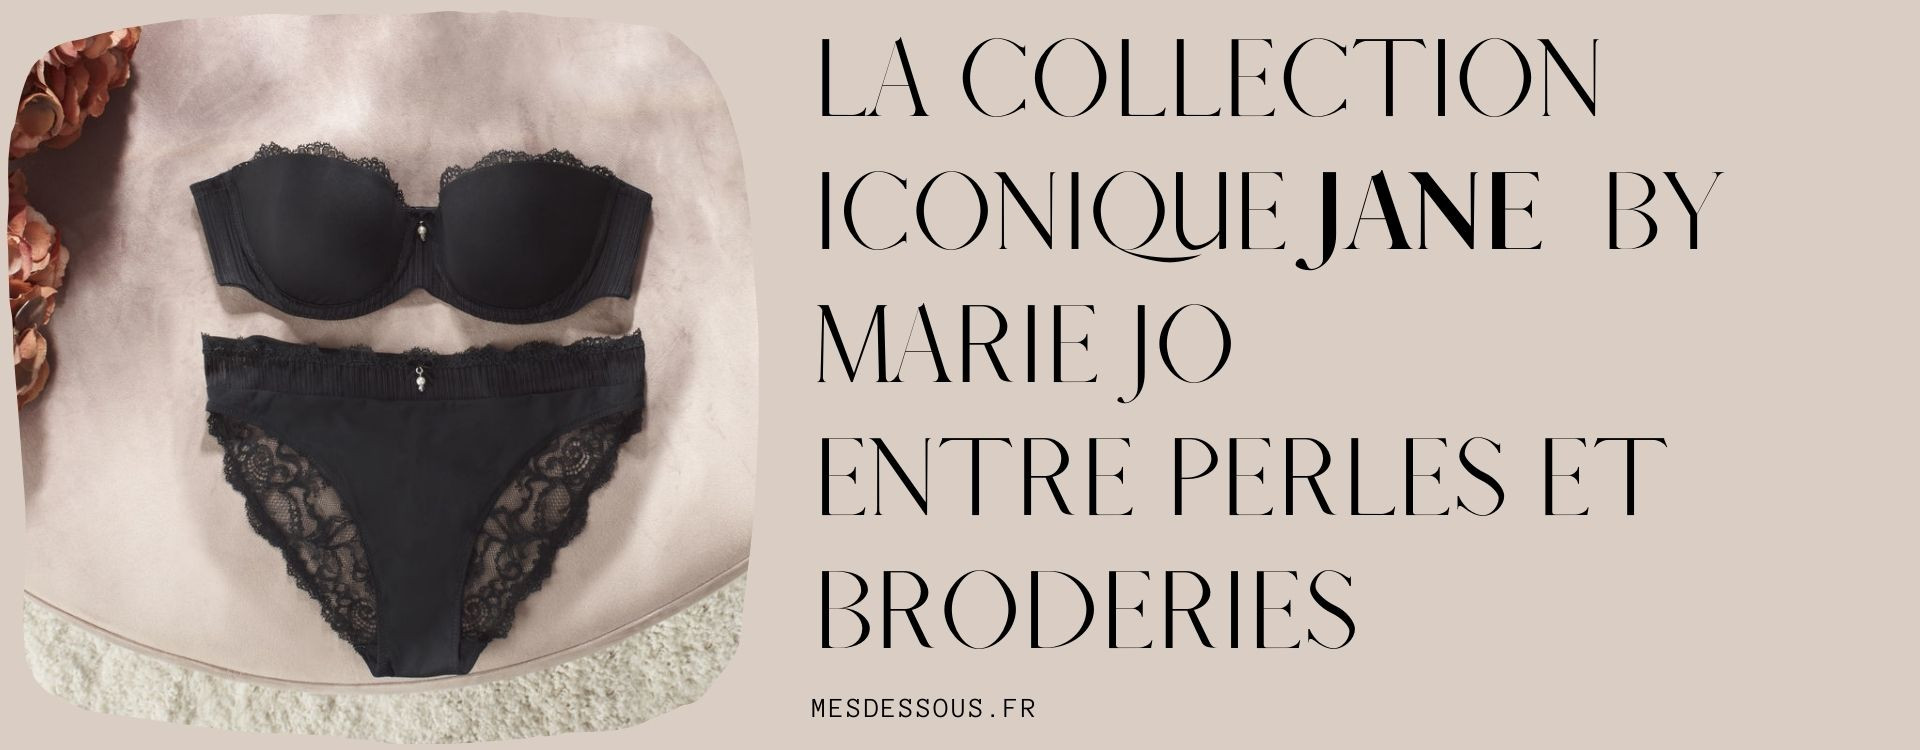 La collection iconique Jane de la marque Marie Jo, entre perles et broderies